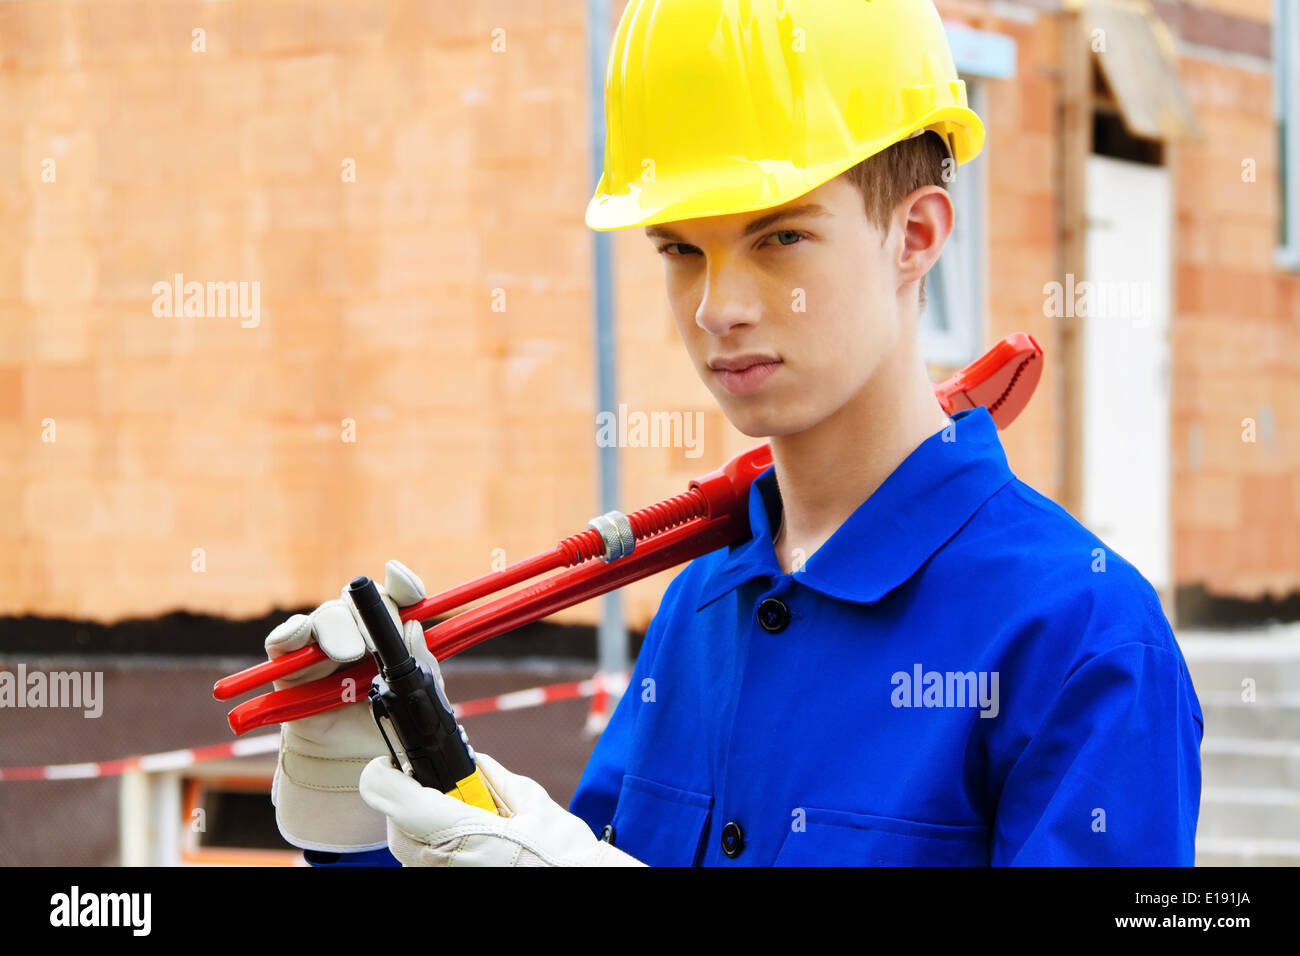 Ein Lehrling / Azubi. Bauarbeiter auf Baustelle mit Helm Stock Photo - Alamy